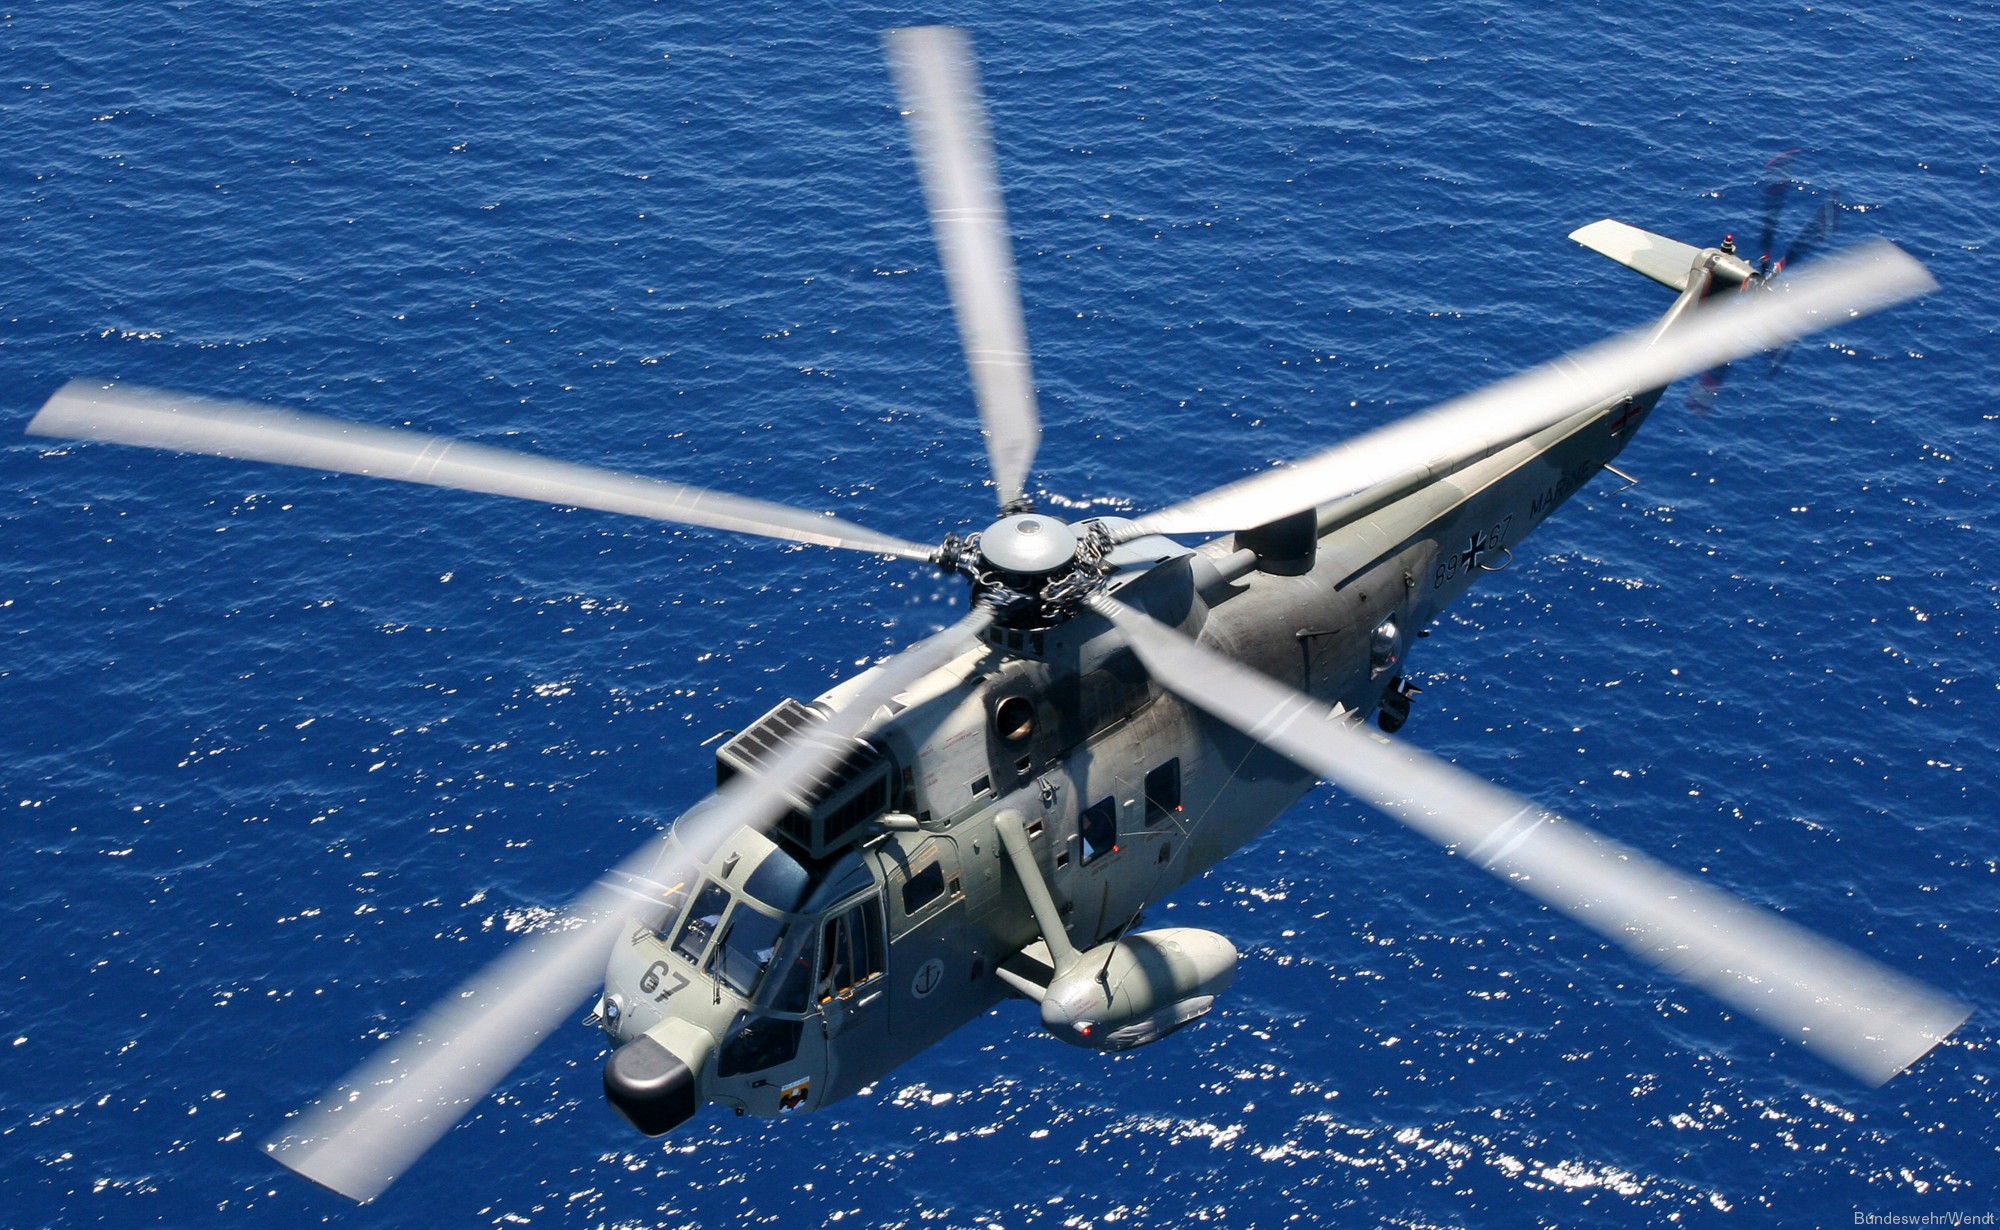 sea king mk.41 westland naval helicopter german navy deutsche marine sar 44